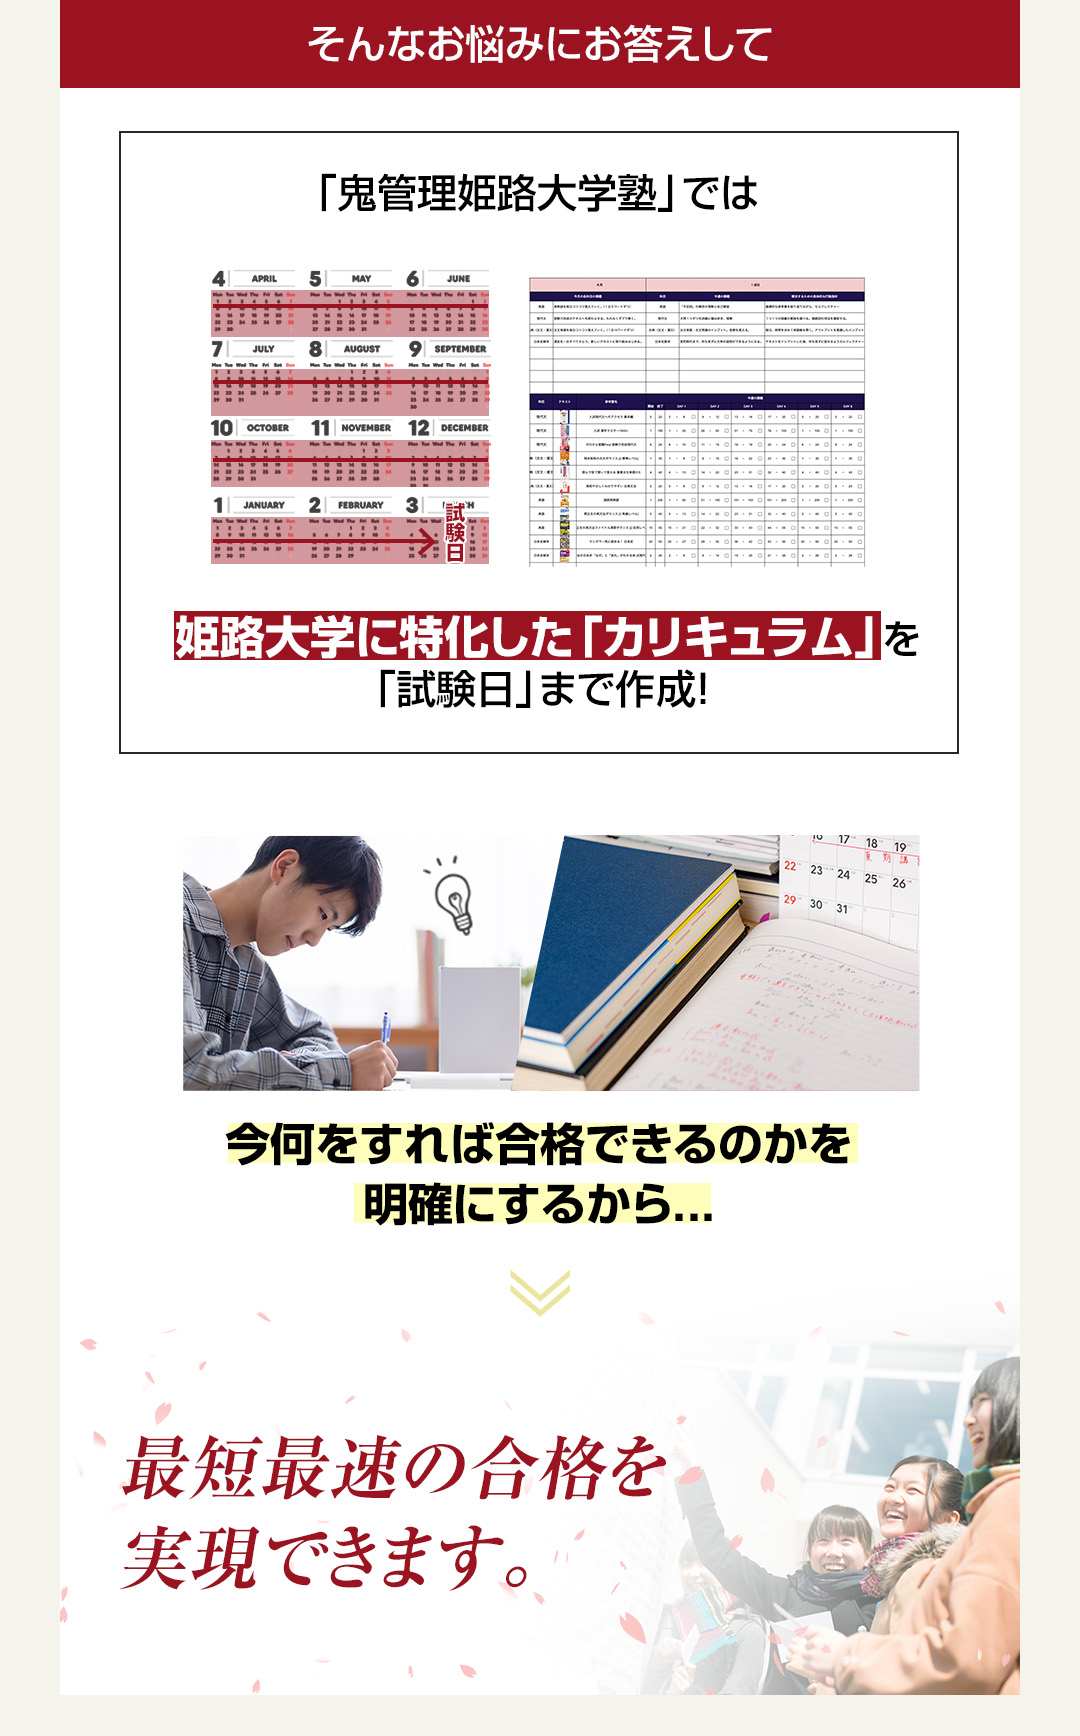 「鬼管理姫路大学塾」では姫路大学に特化した「カリキュラム」を「試験日」まで作成